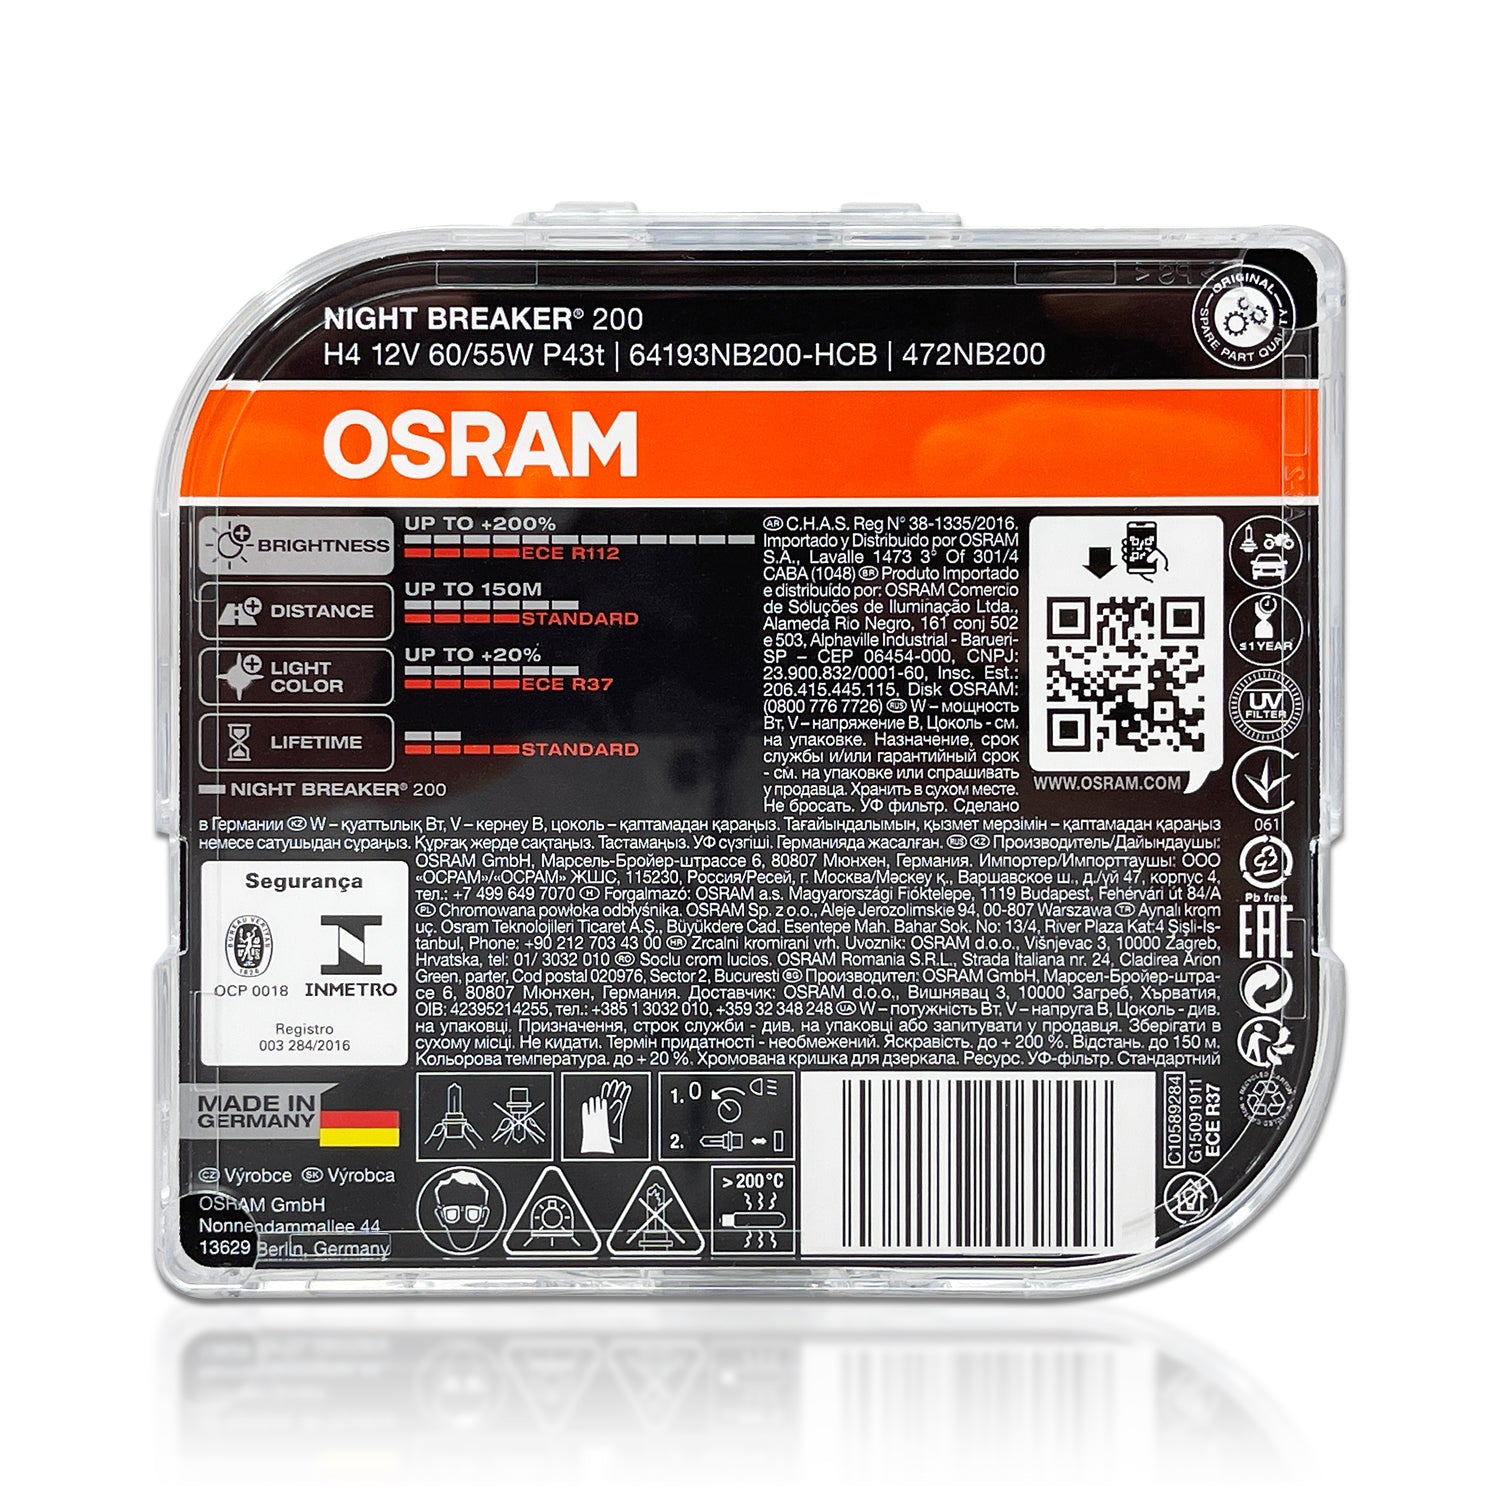 OSRAM Night Breaker 200 